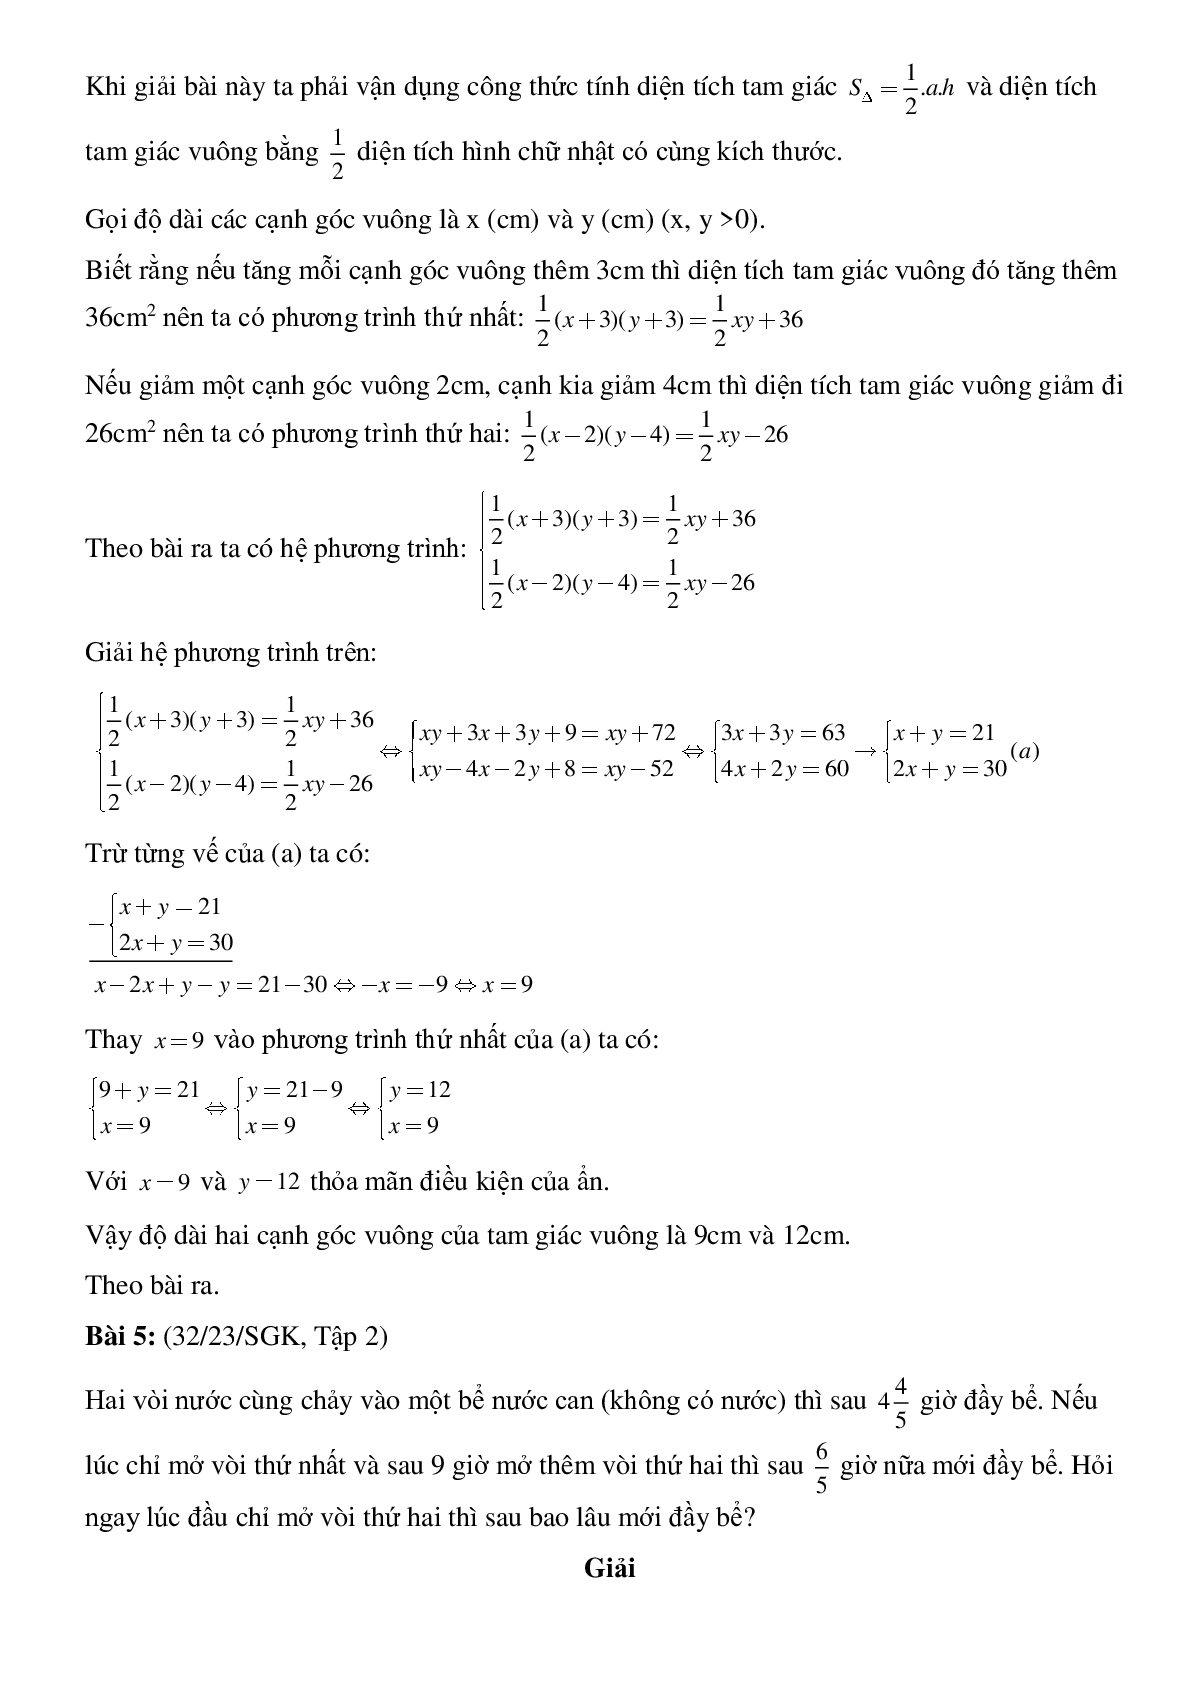 50 Bài tập Giải bài toán bằng cách lập hệ phương trình (có đáp án)- Toán 9 (trang 4)